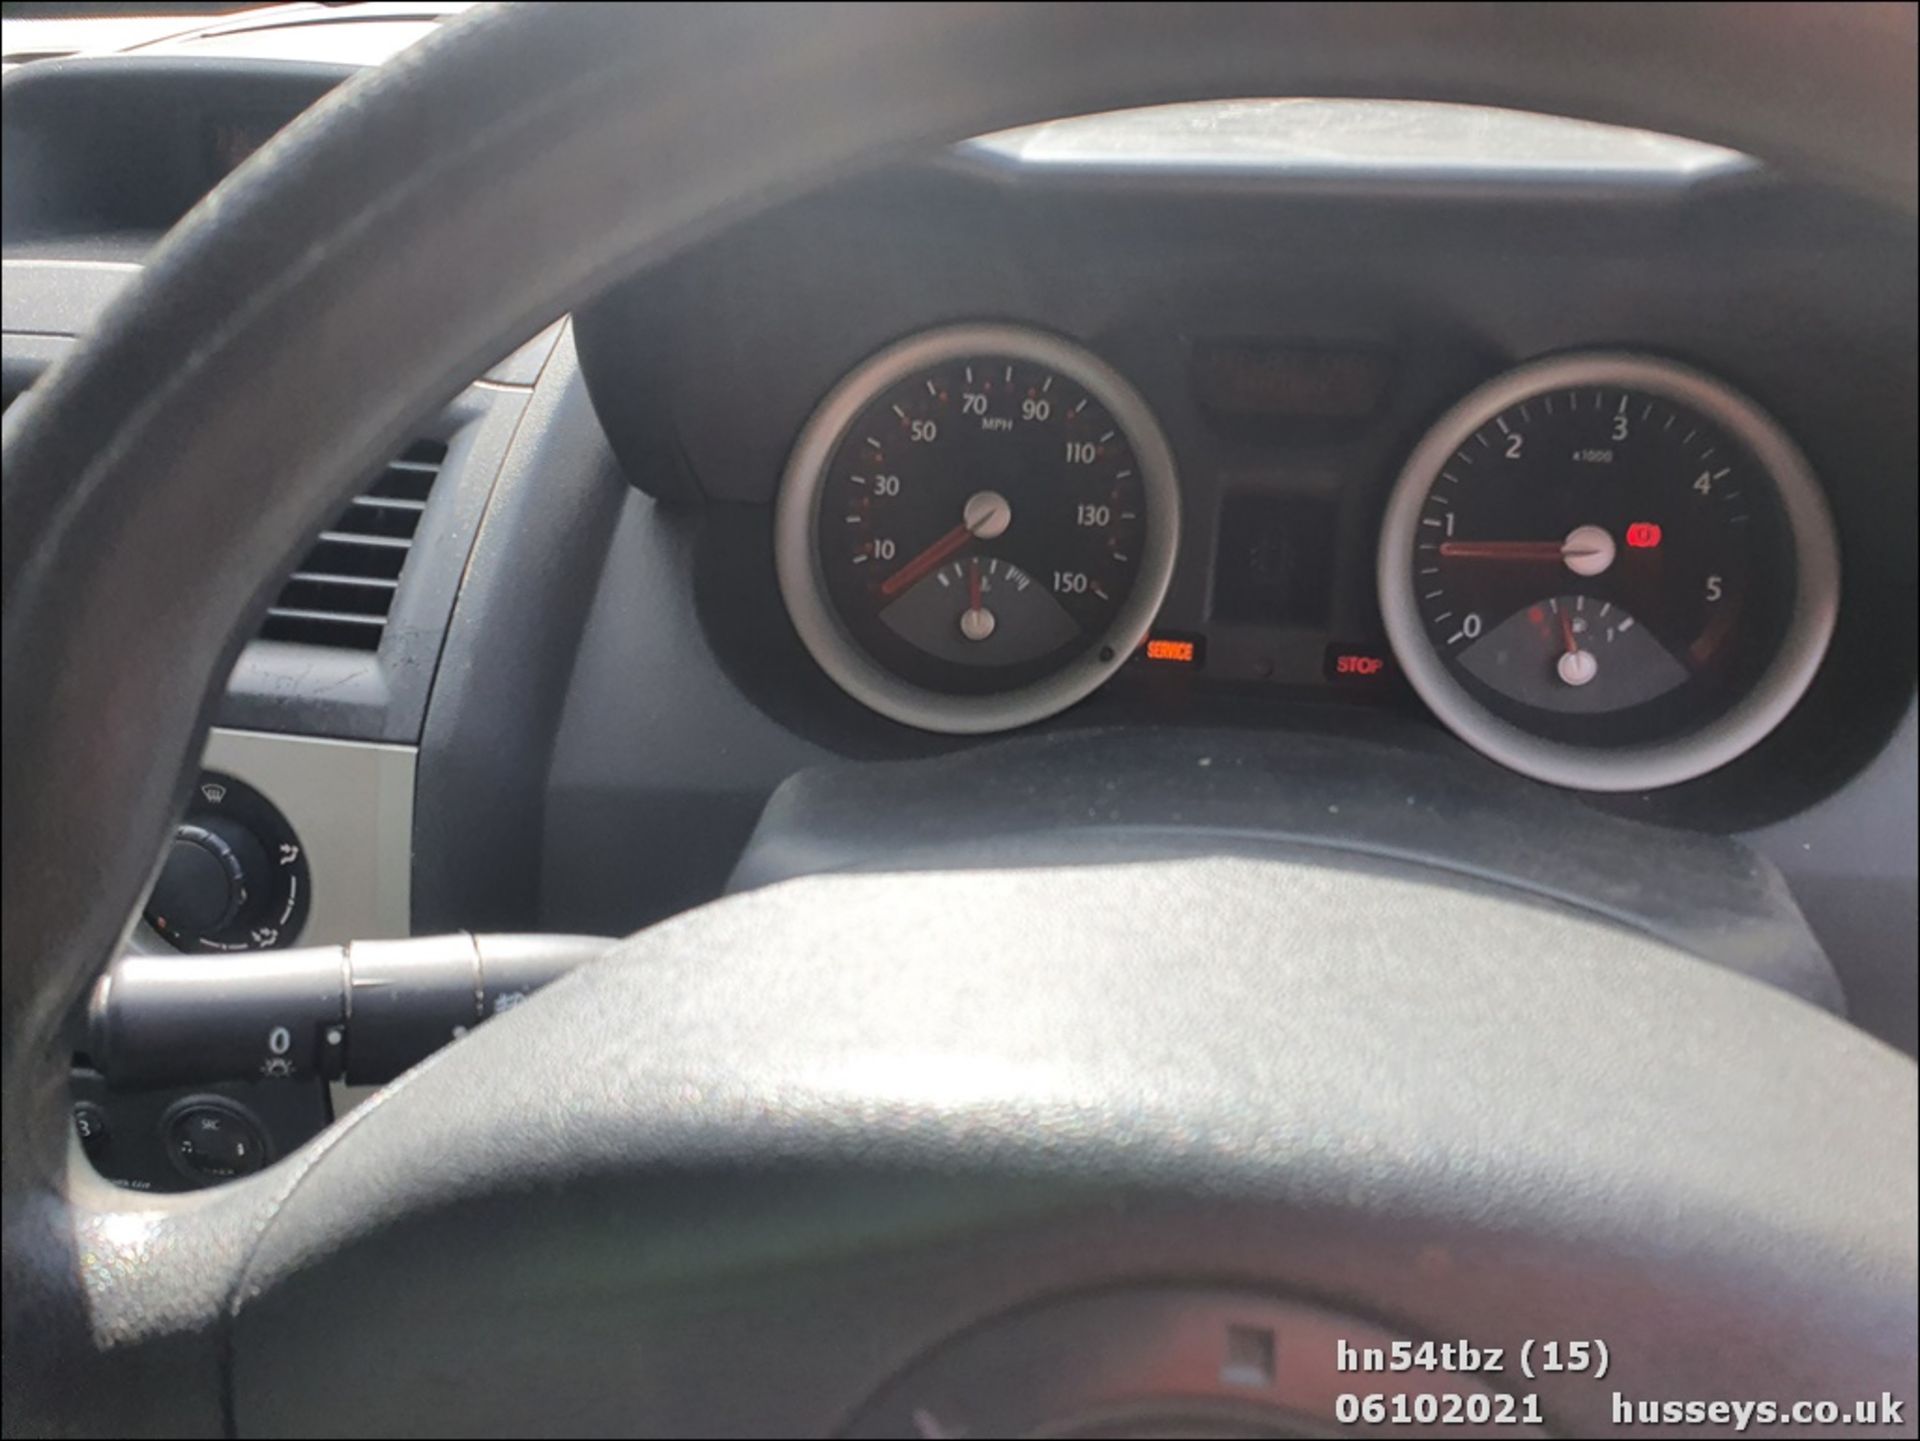 04/54 RENAULT MEGANE EXPRESSION DCI 100 - 1461cc 5dr Hatchback (Red, 130k) - Image 15 of 25